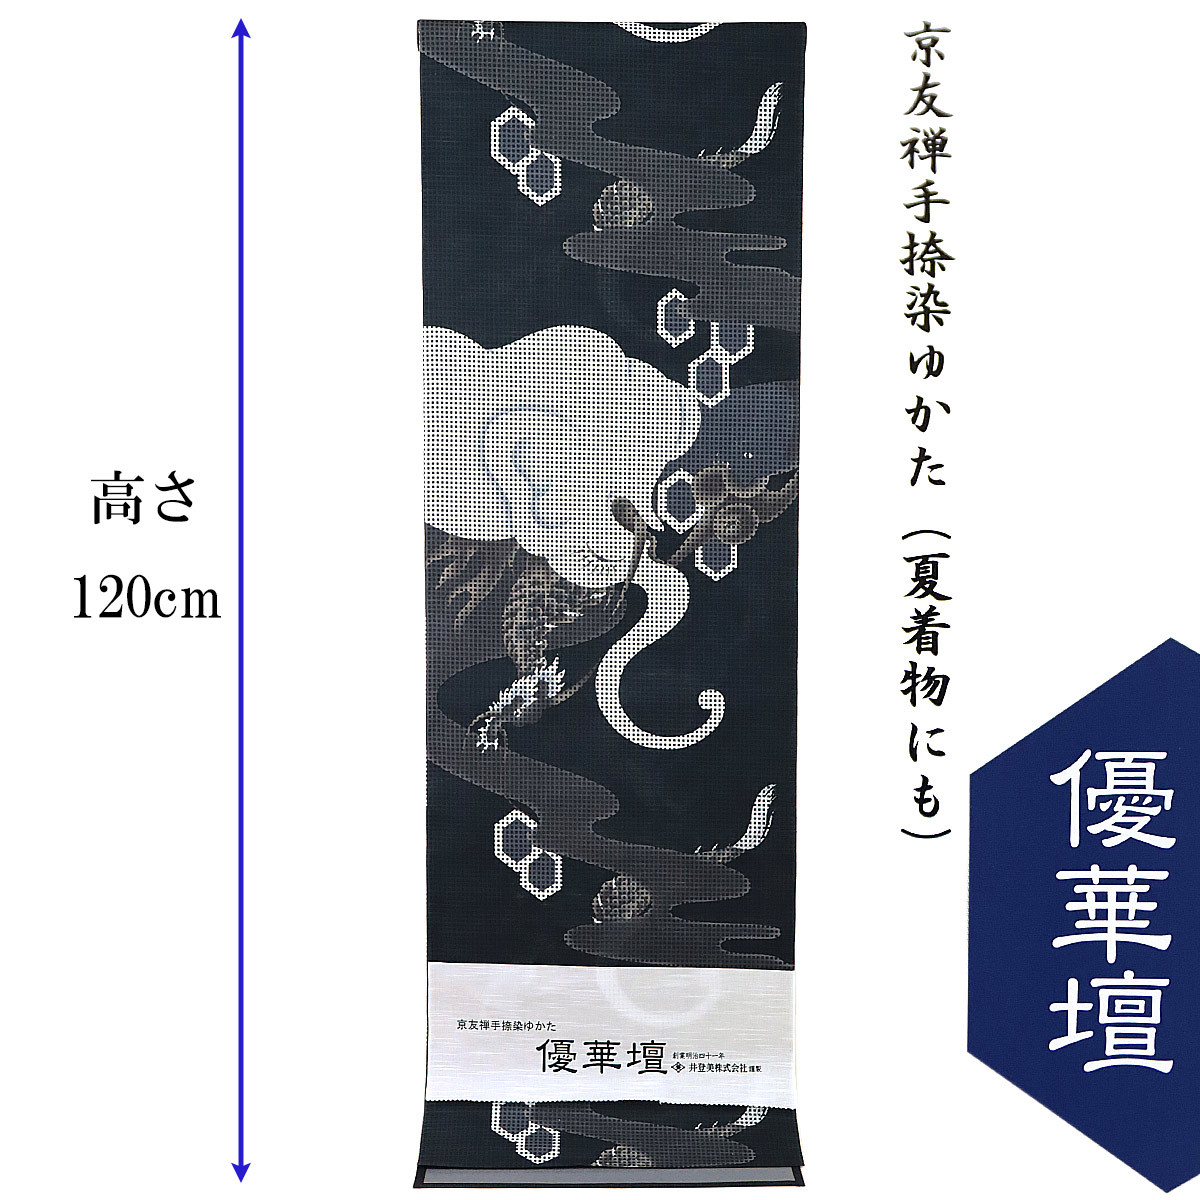  super .. юката ткань унисекс -20D- Kyouyuuzen рука .. хлопок 100% сделано в Японии .. белый . чёрный 